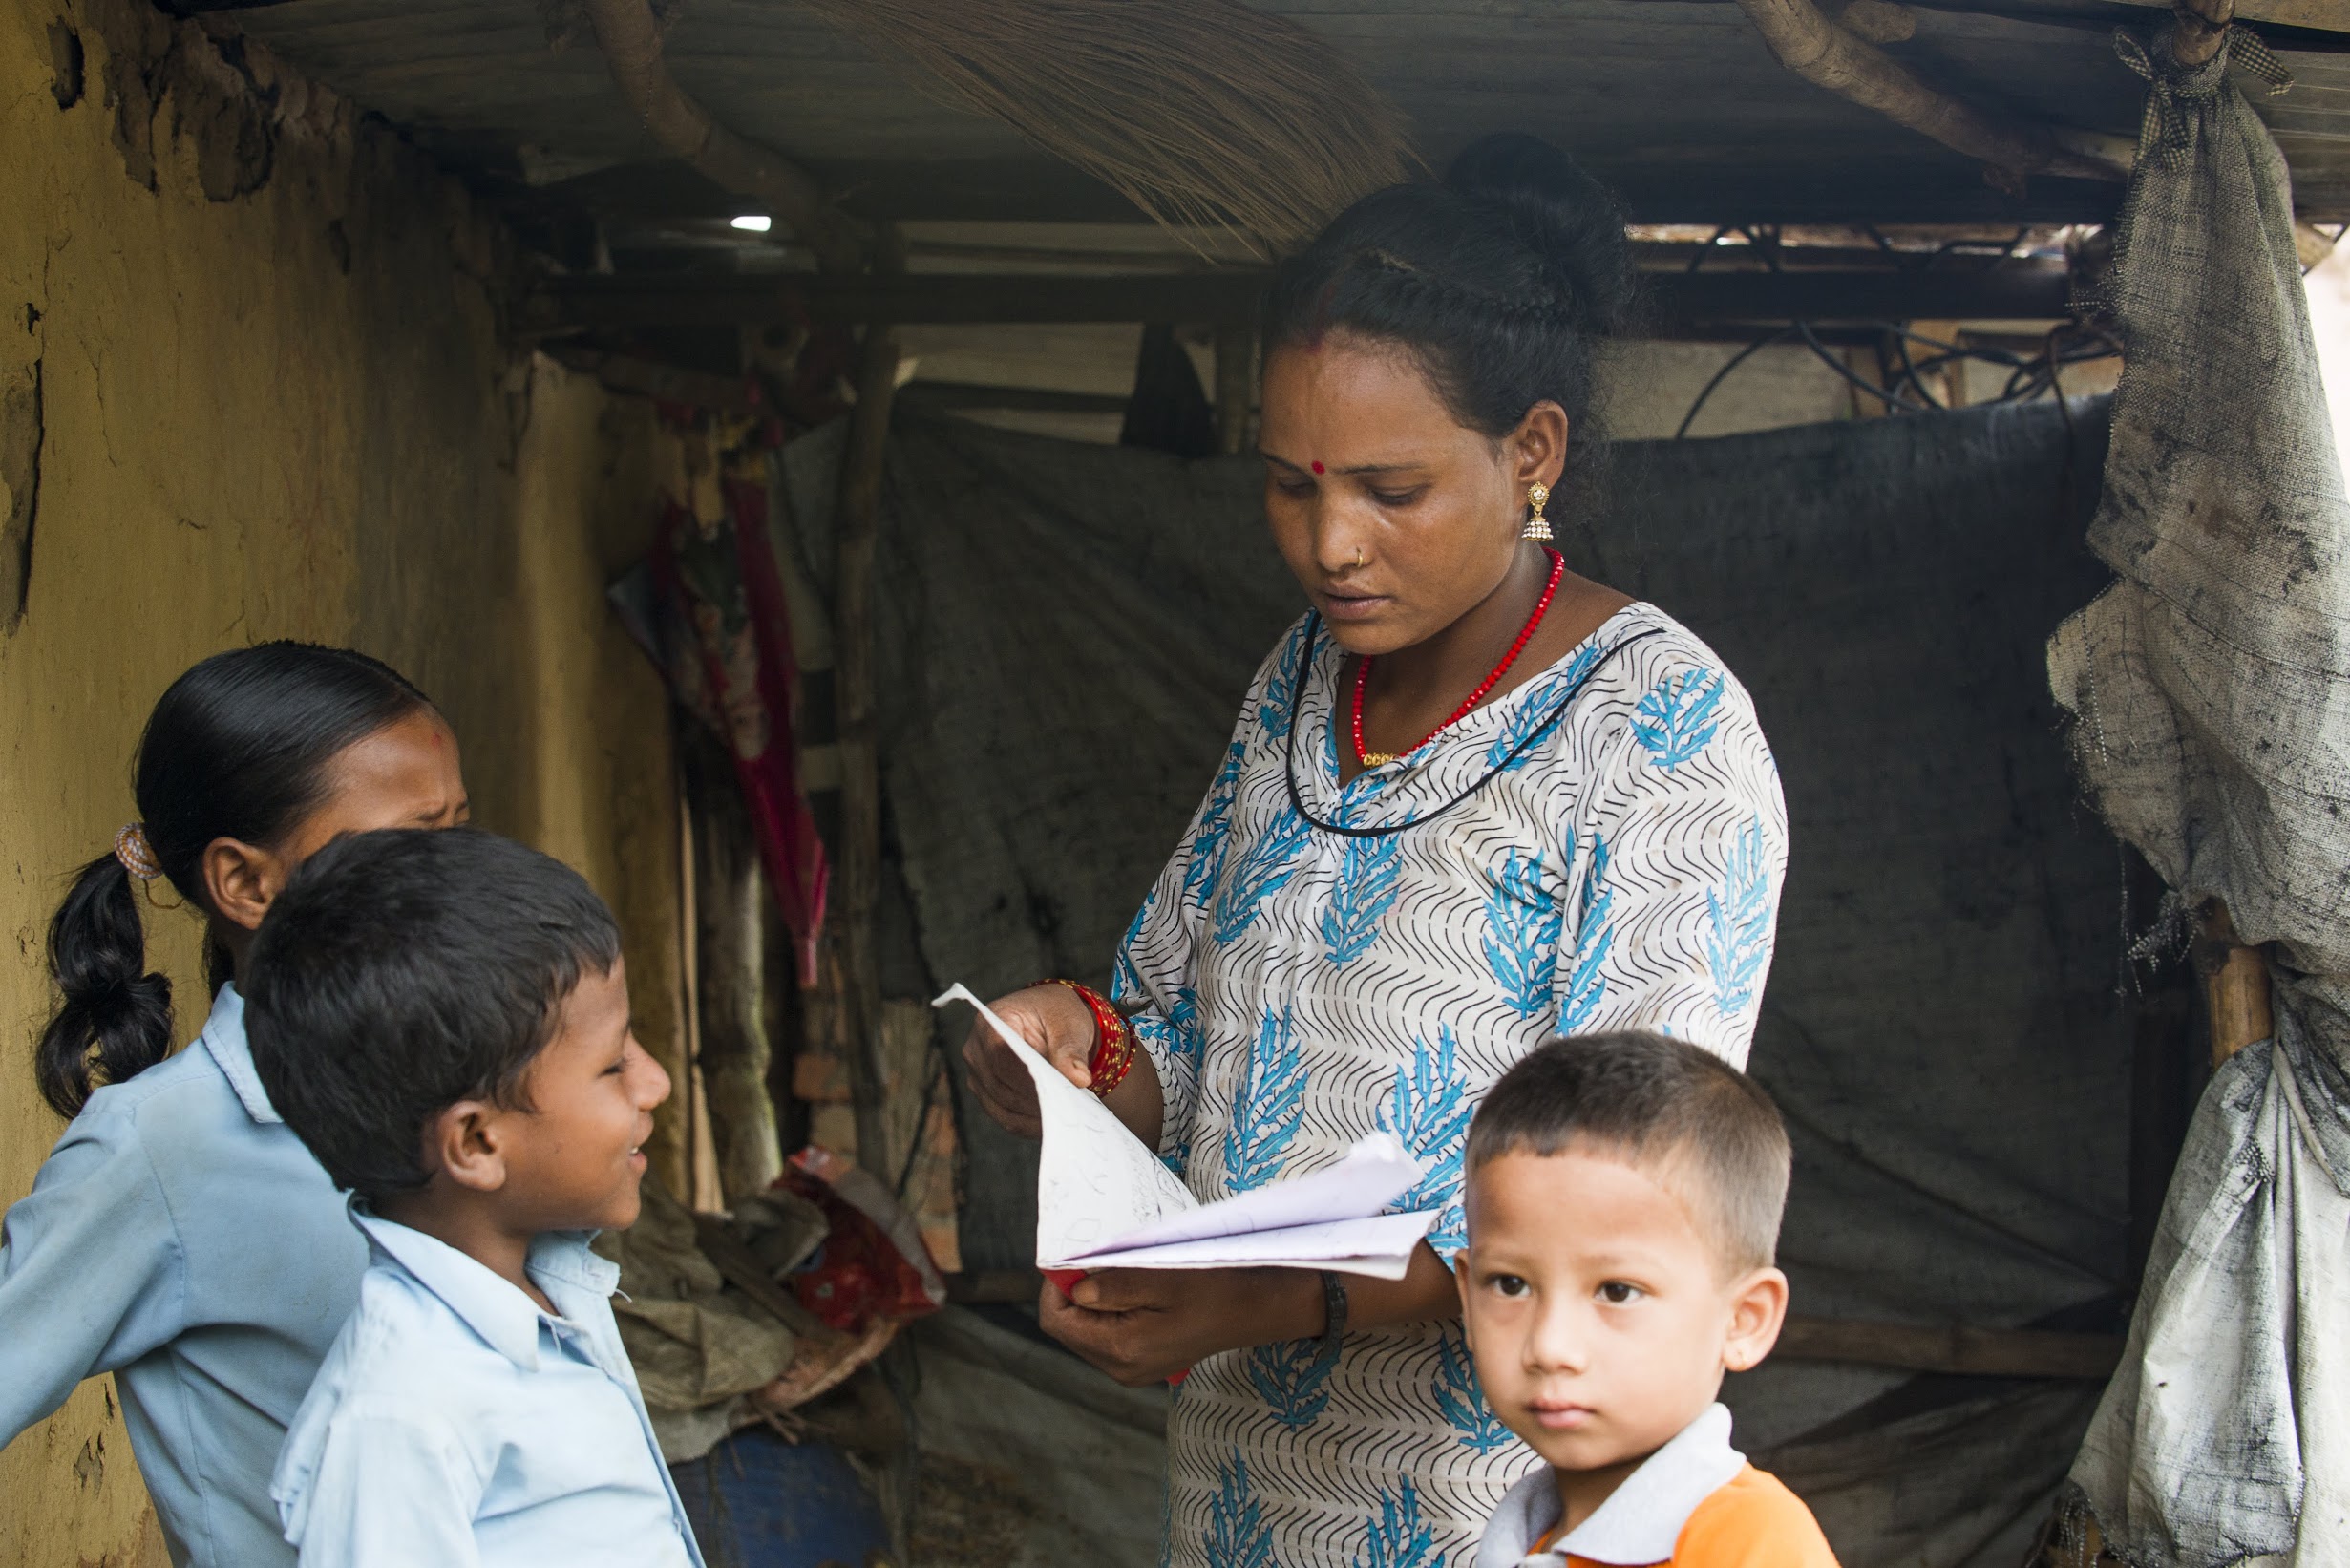 Dhana checks her children’s homework before sending them off to school